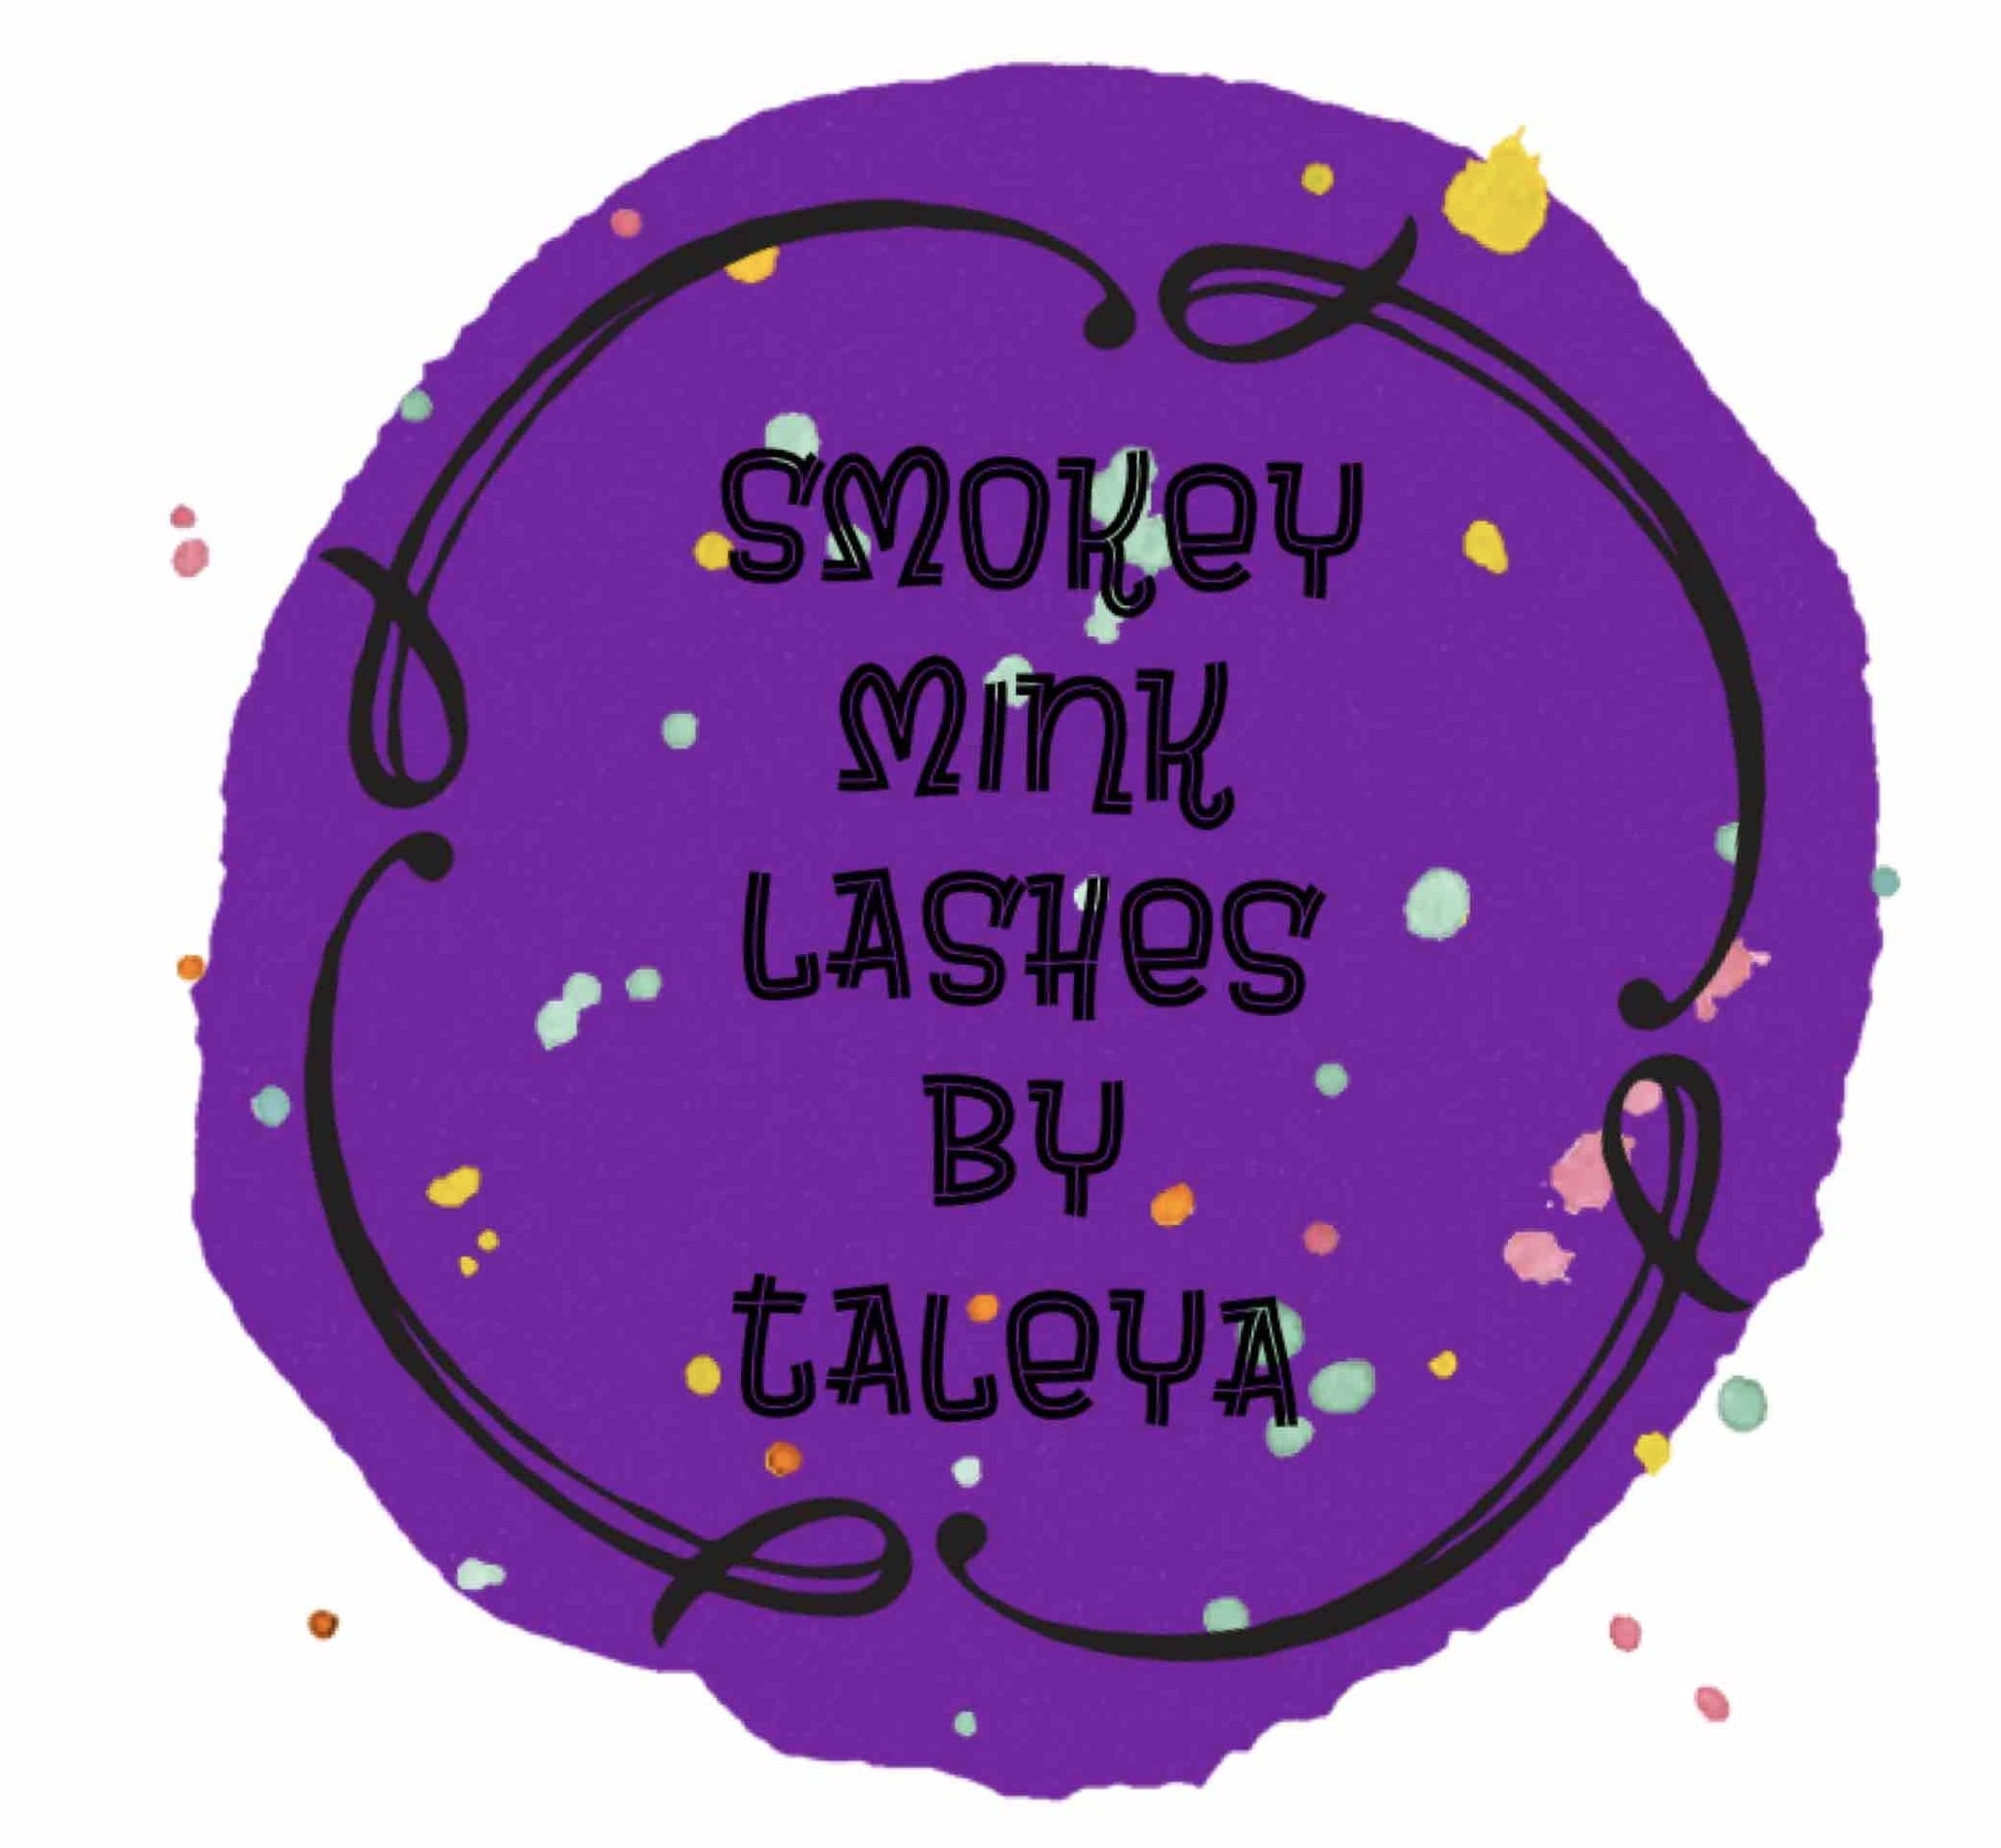 Smokey mink lashes